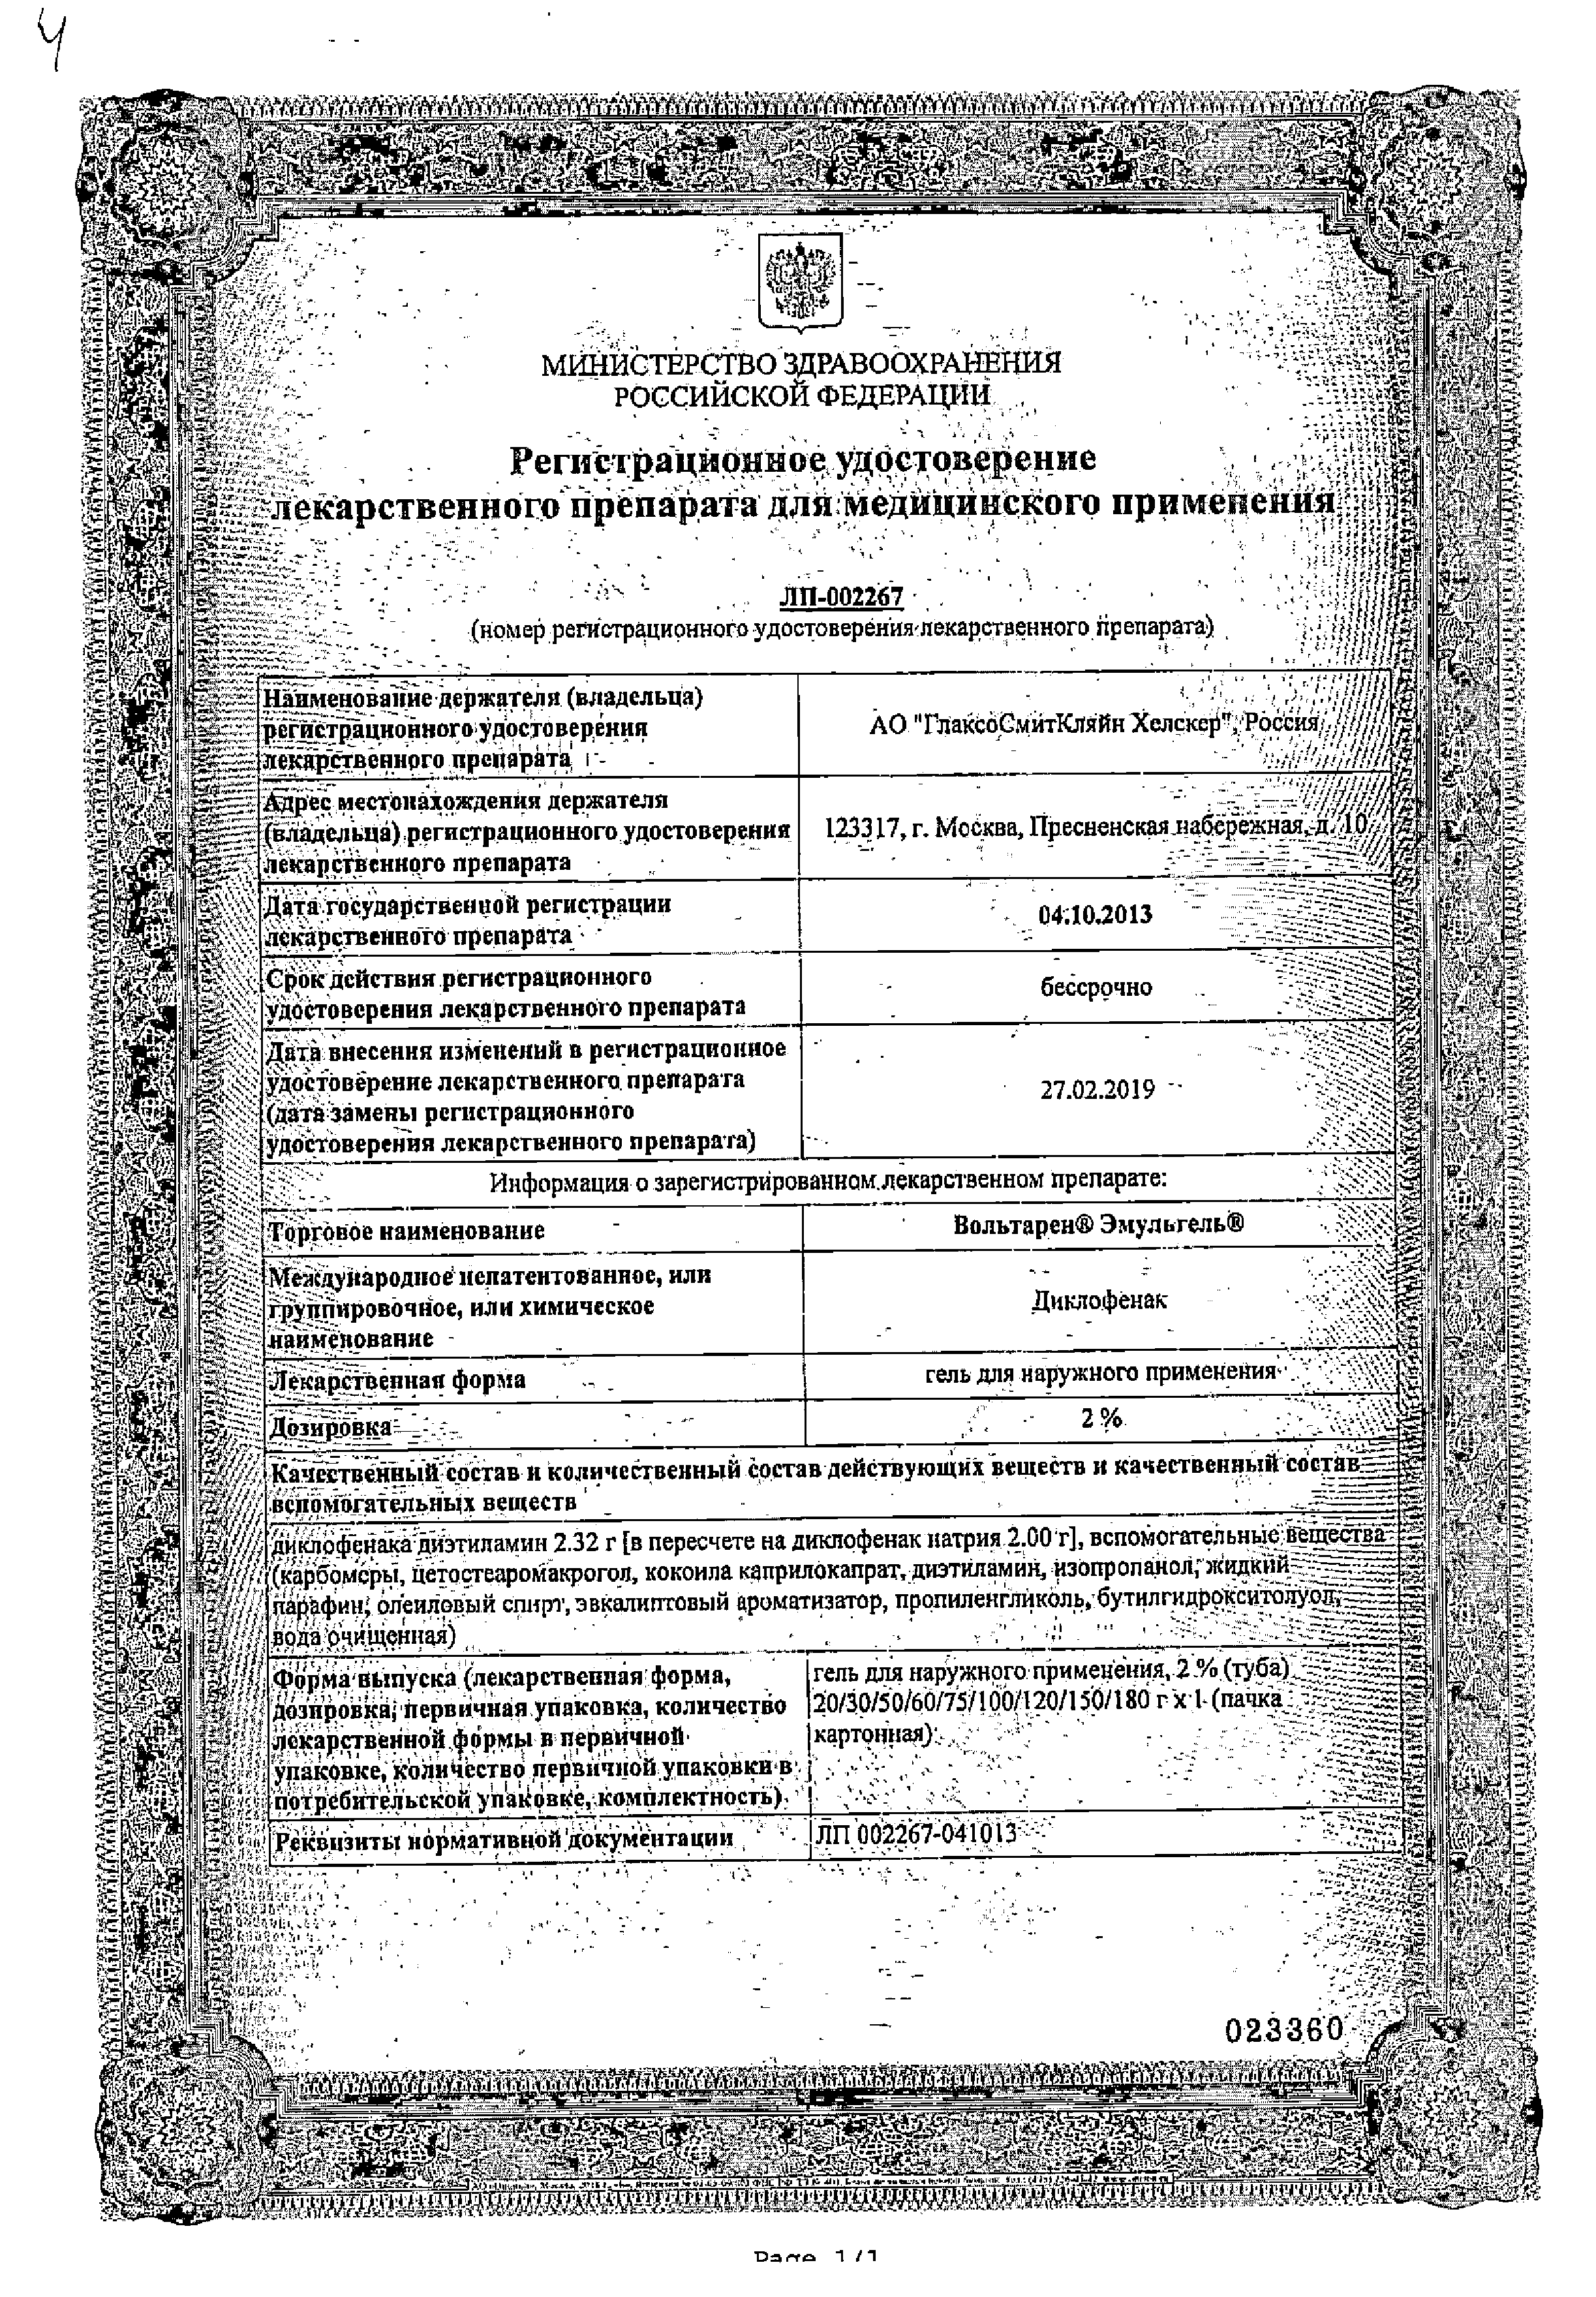 Вольтарен Эмульгель сертификат